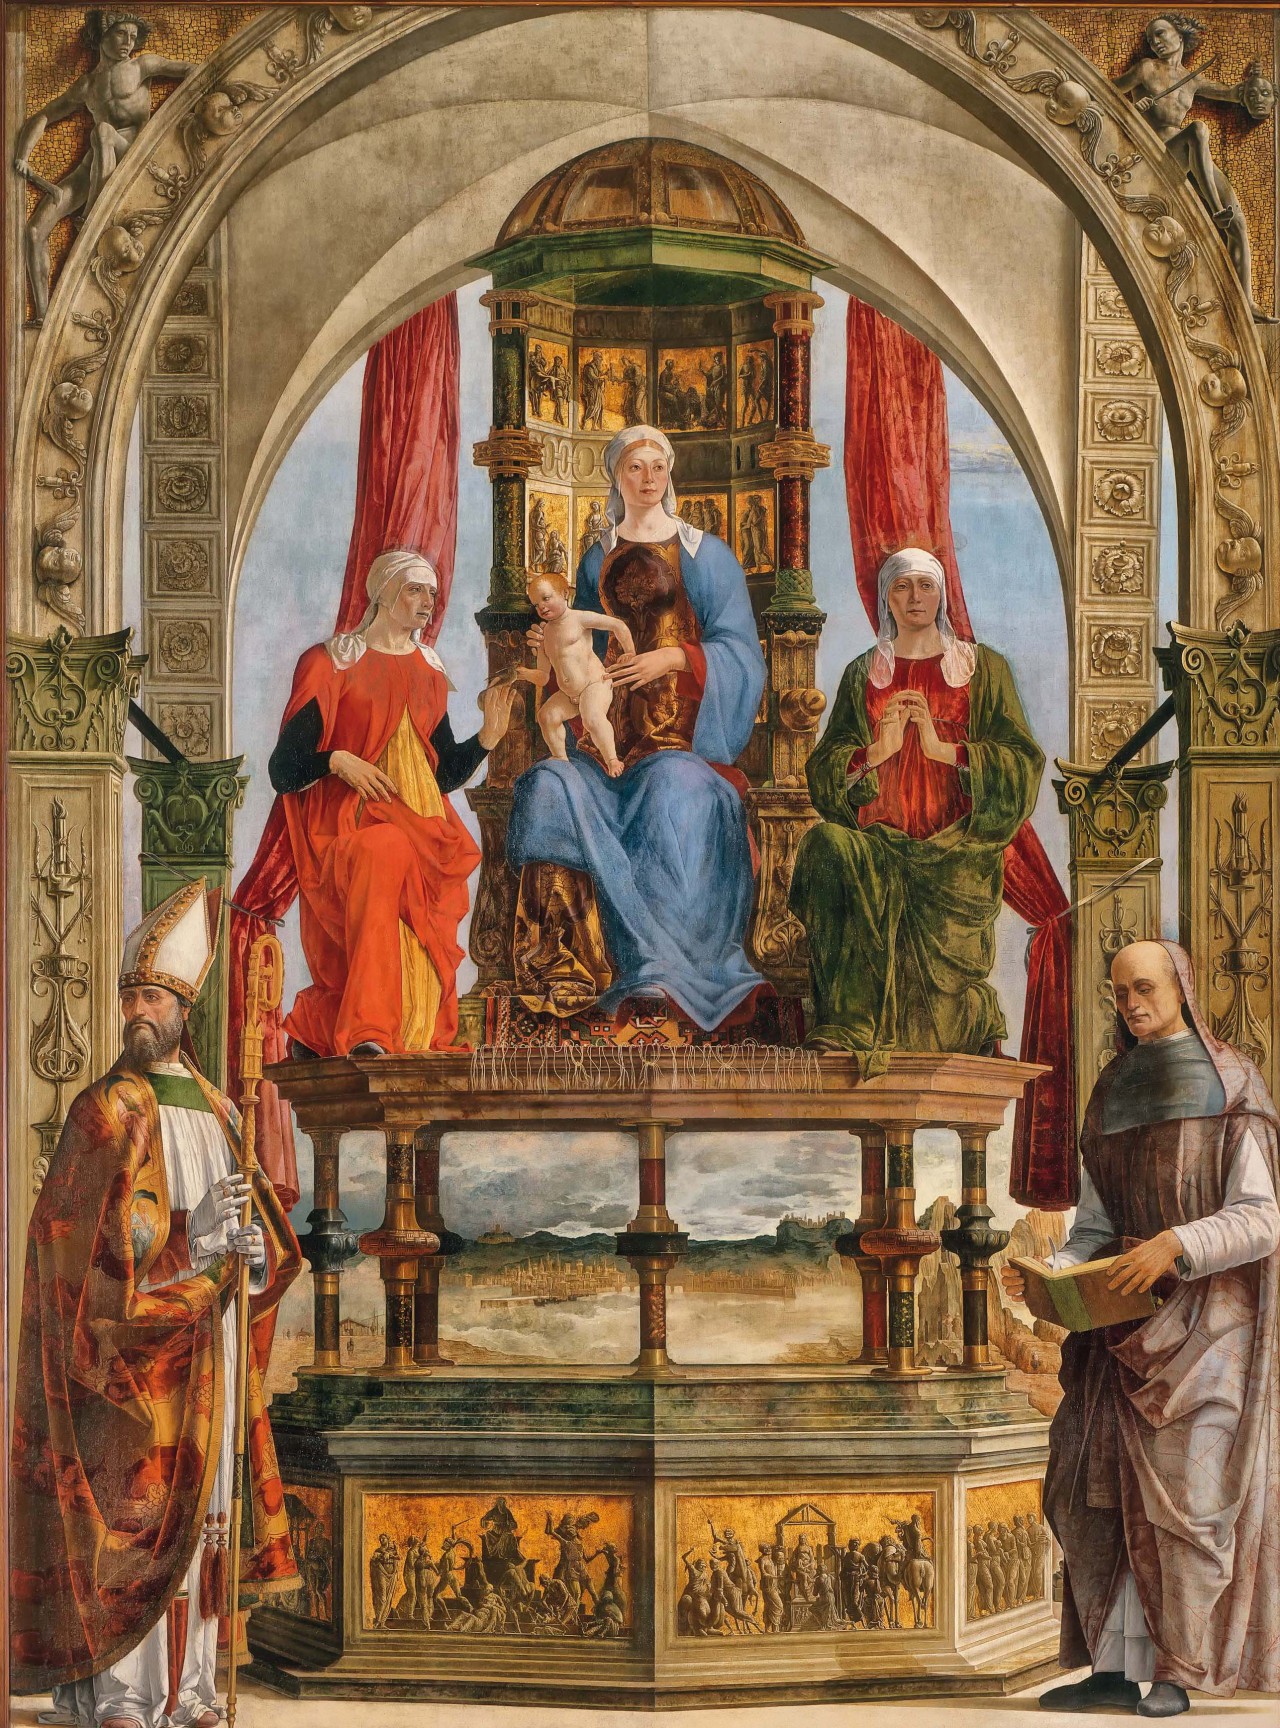 givemesomesoma: Ercole de’ Roberti Pala Portuense 1479 - 1481 Pinacoteca di Brera,